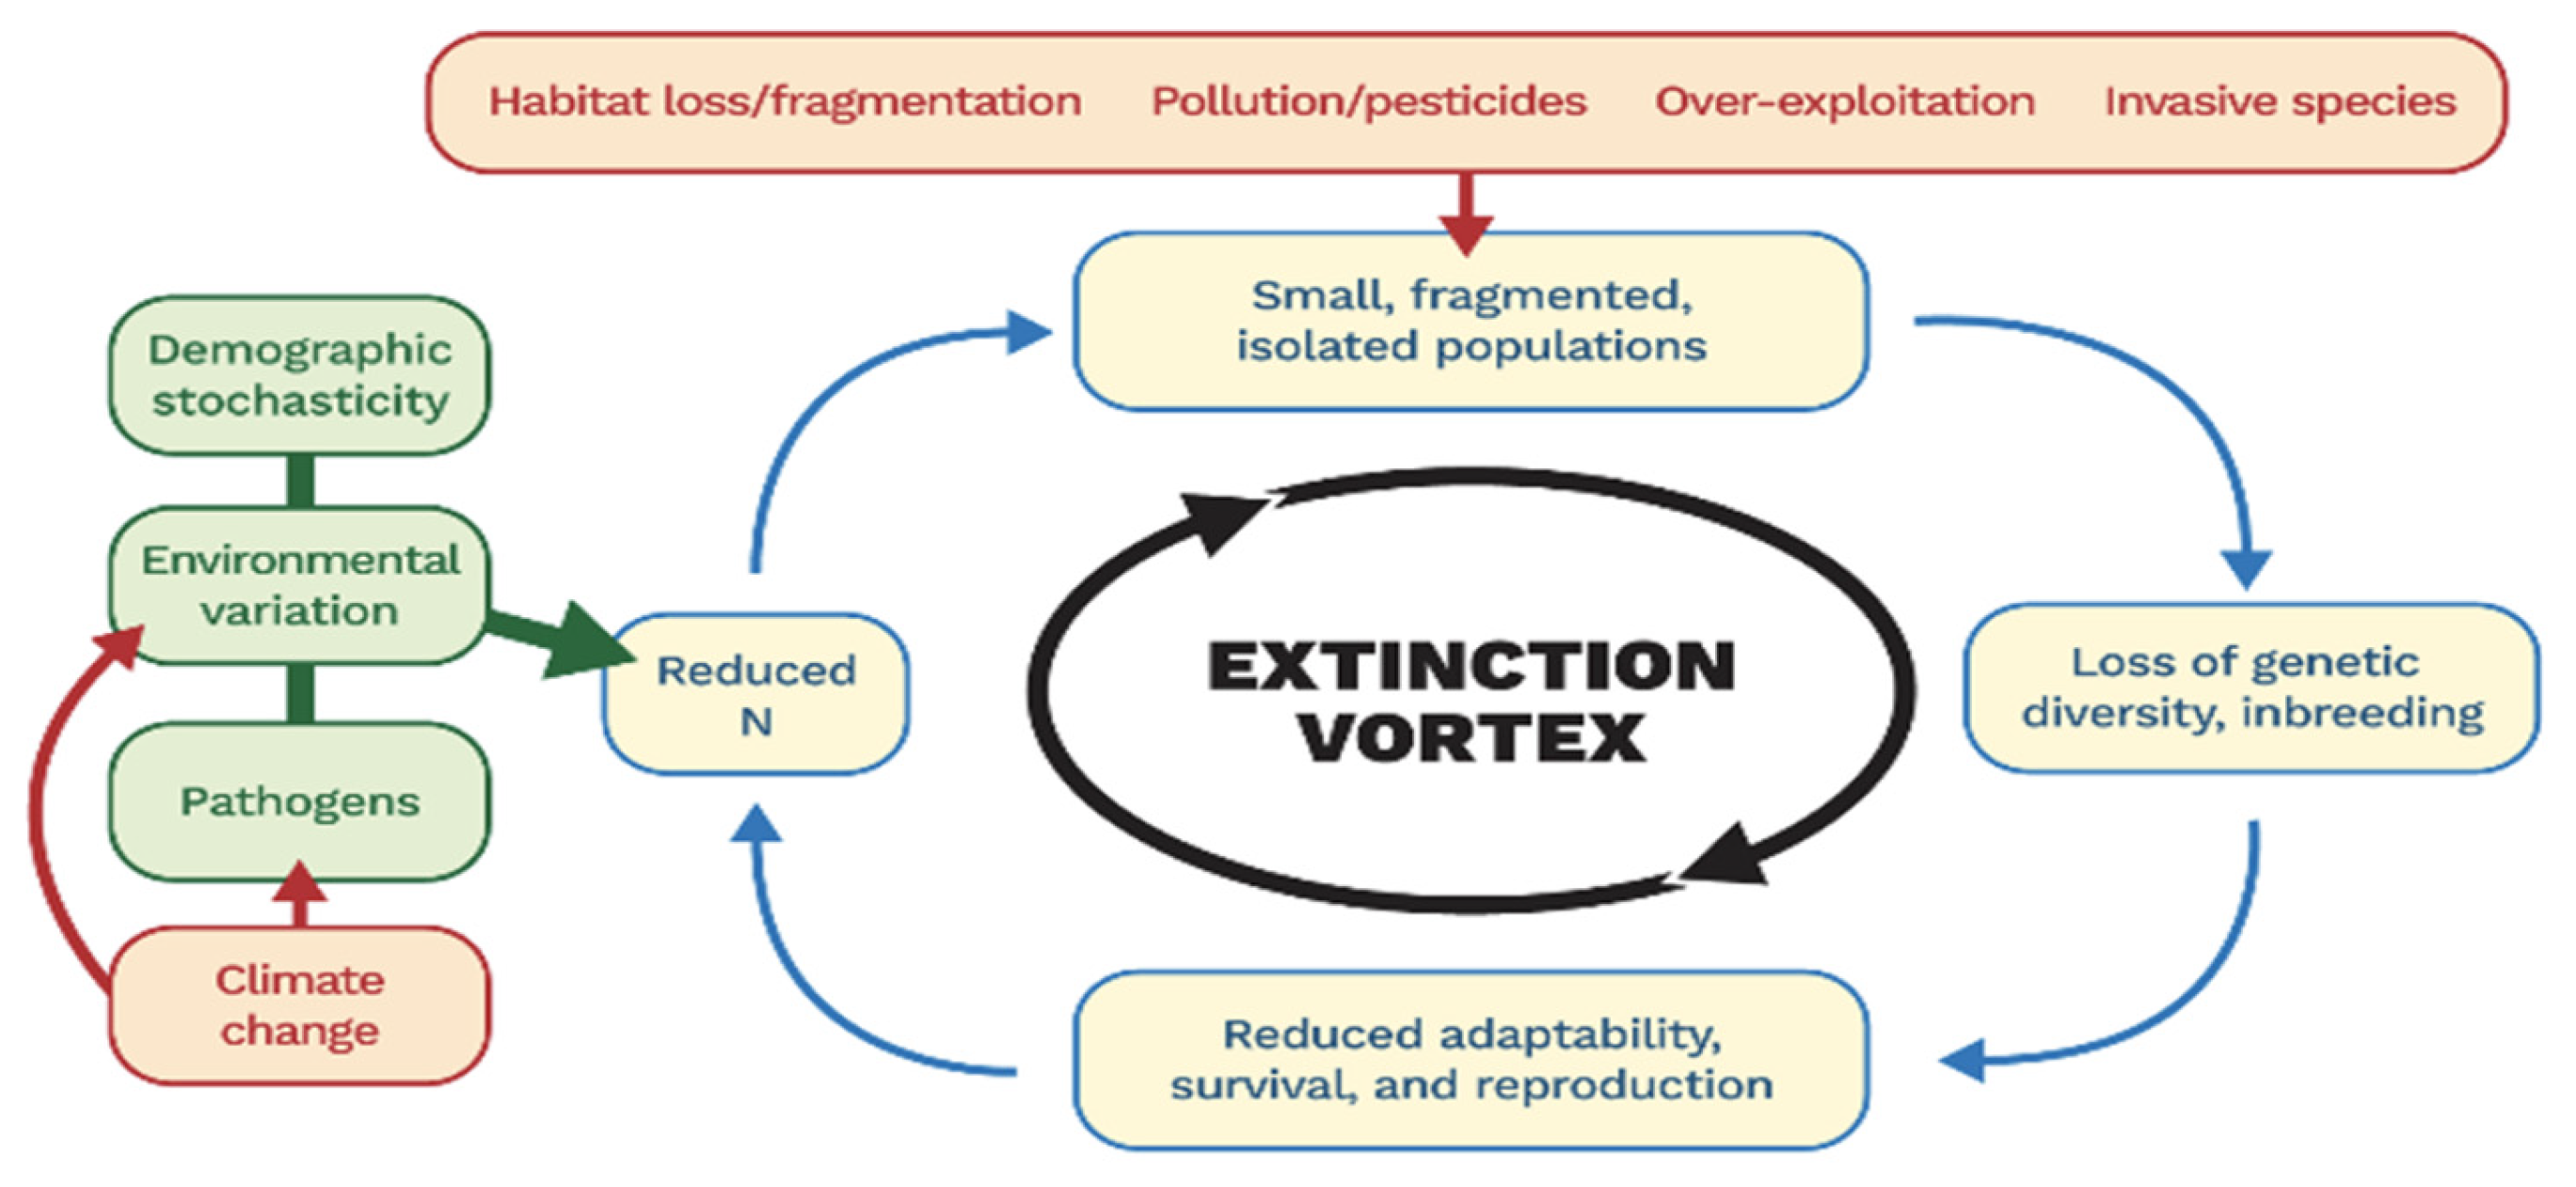 The extinction vortex